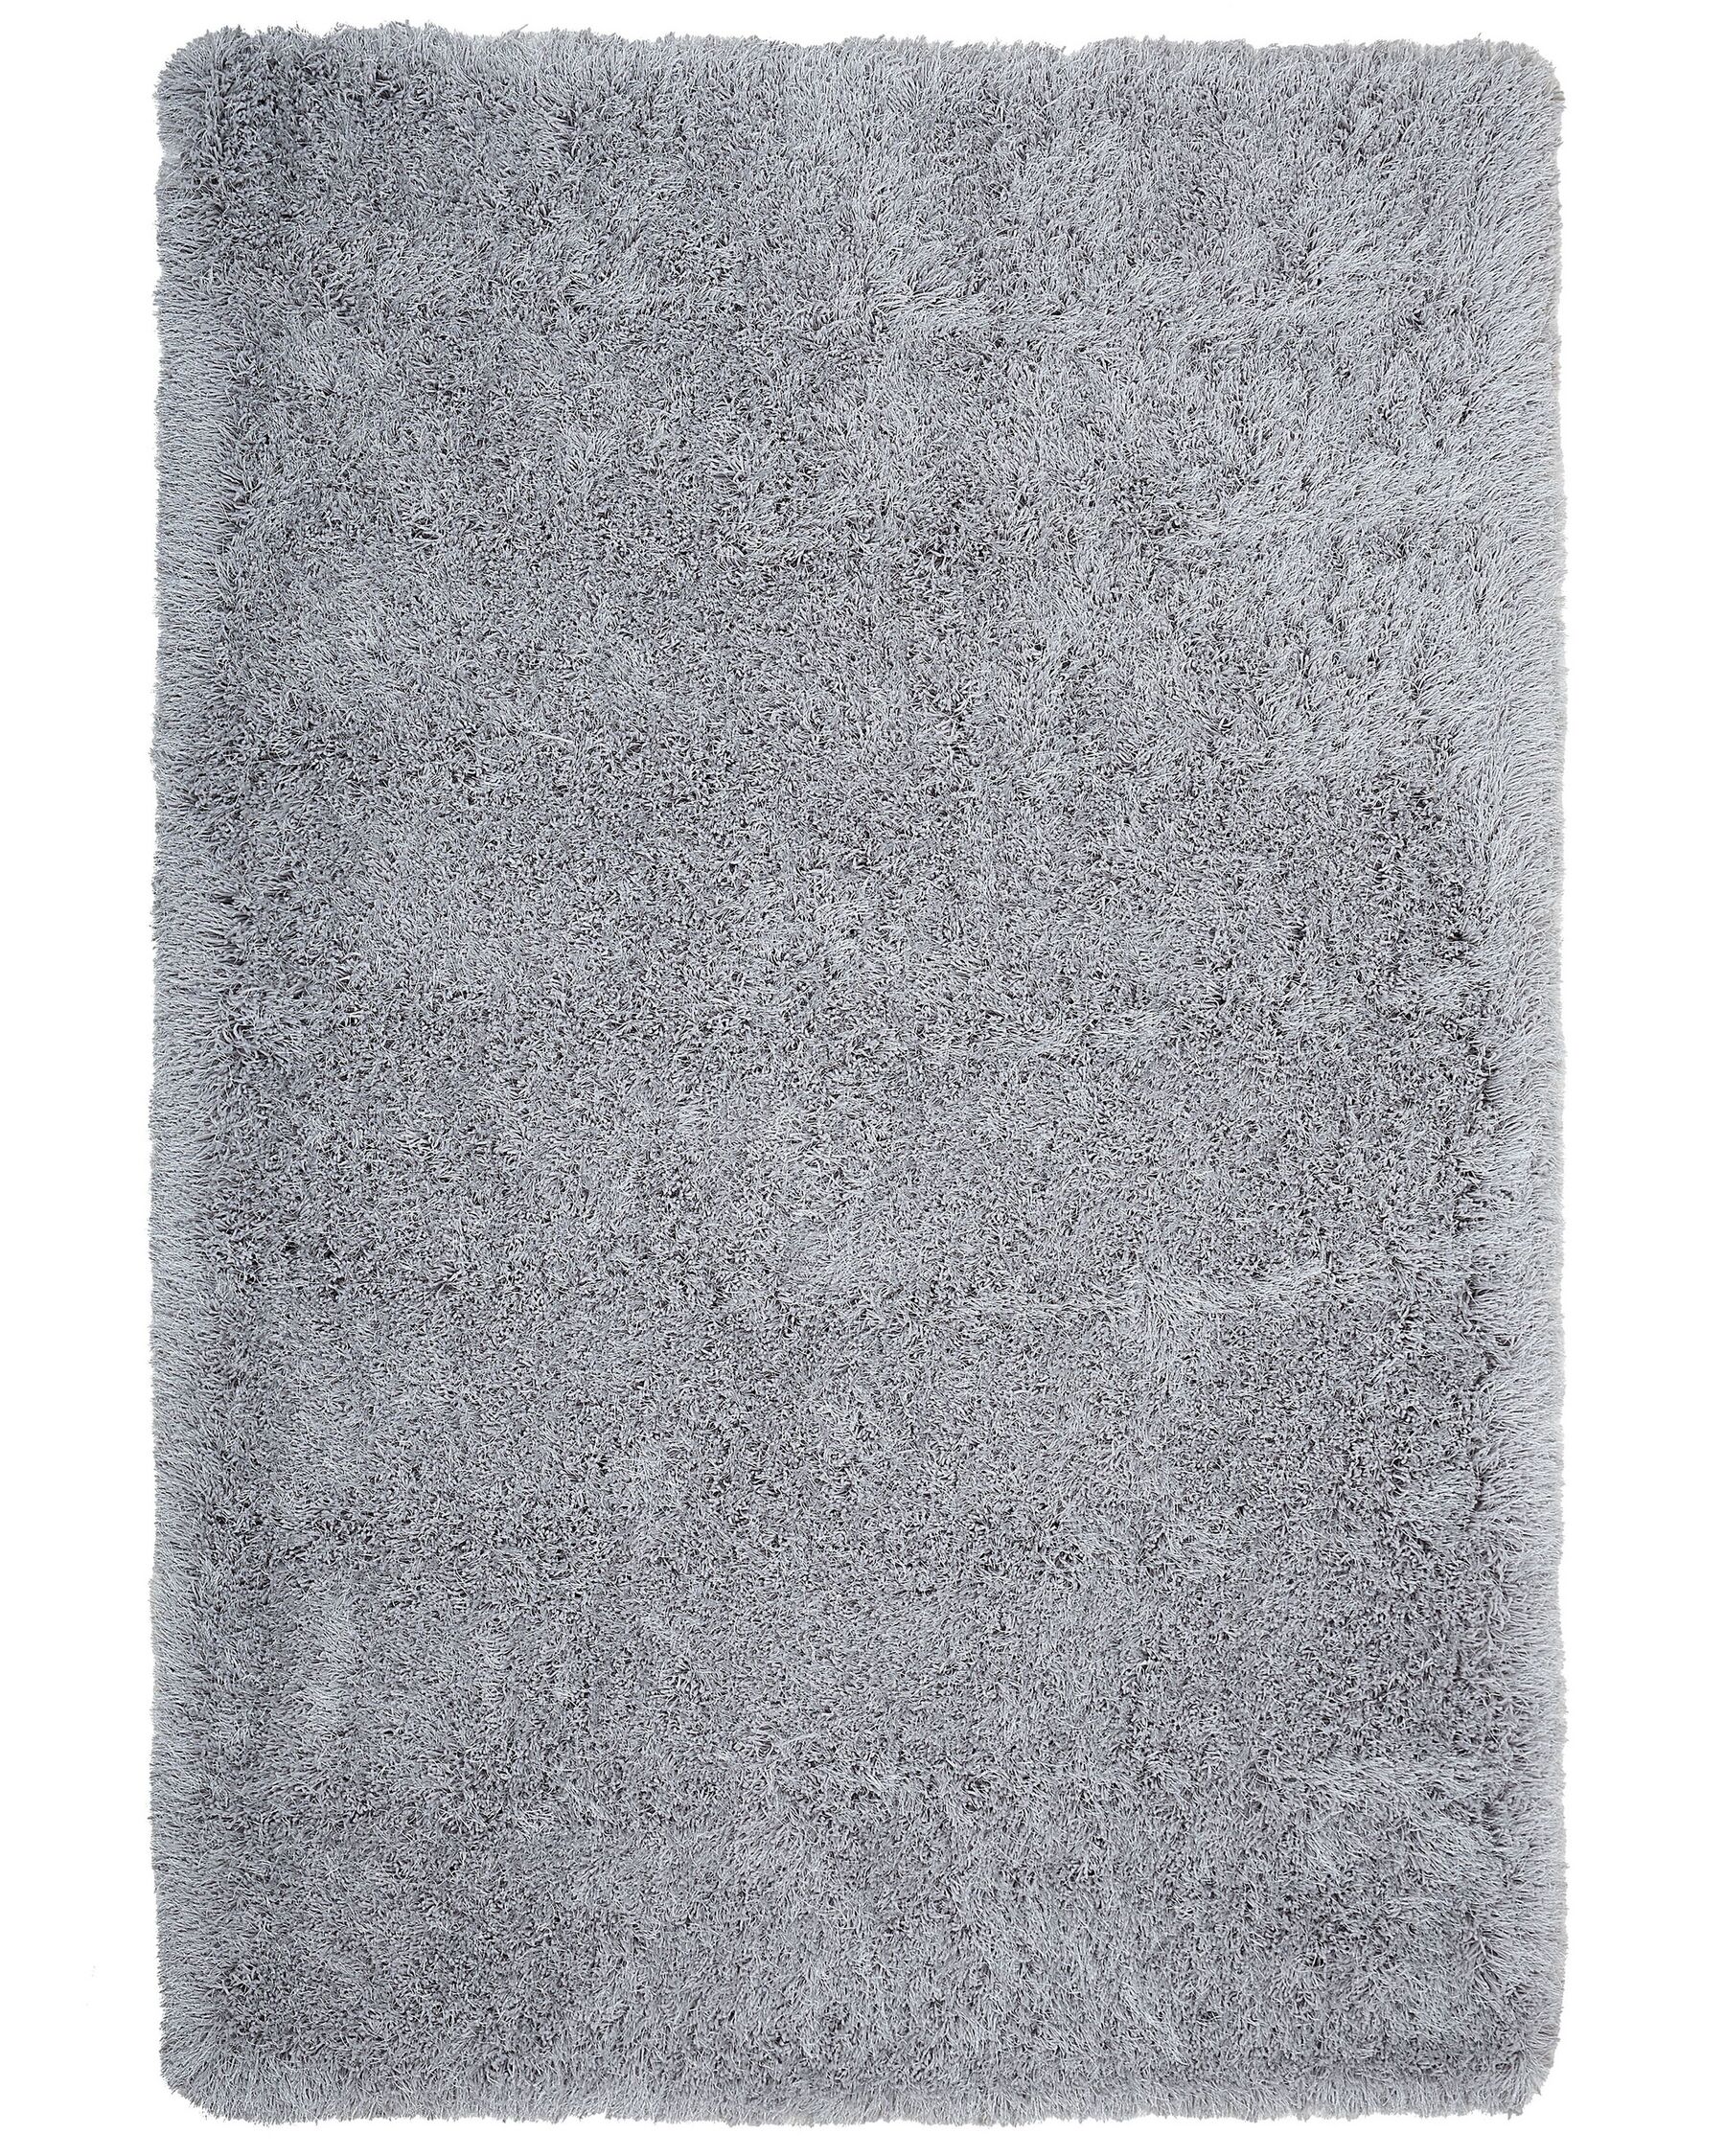 Tappeto shaggy rettangolare grigio chiaro 200 x 300 cm CIDE_746787